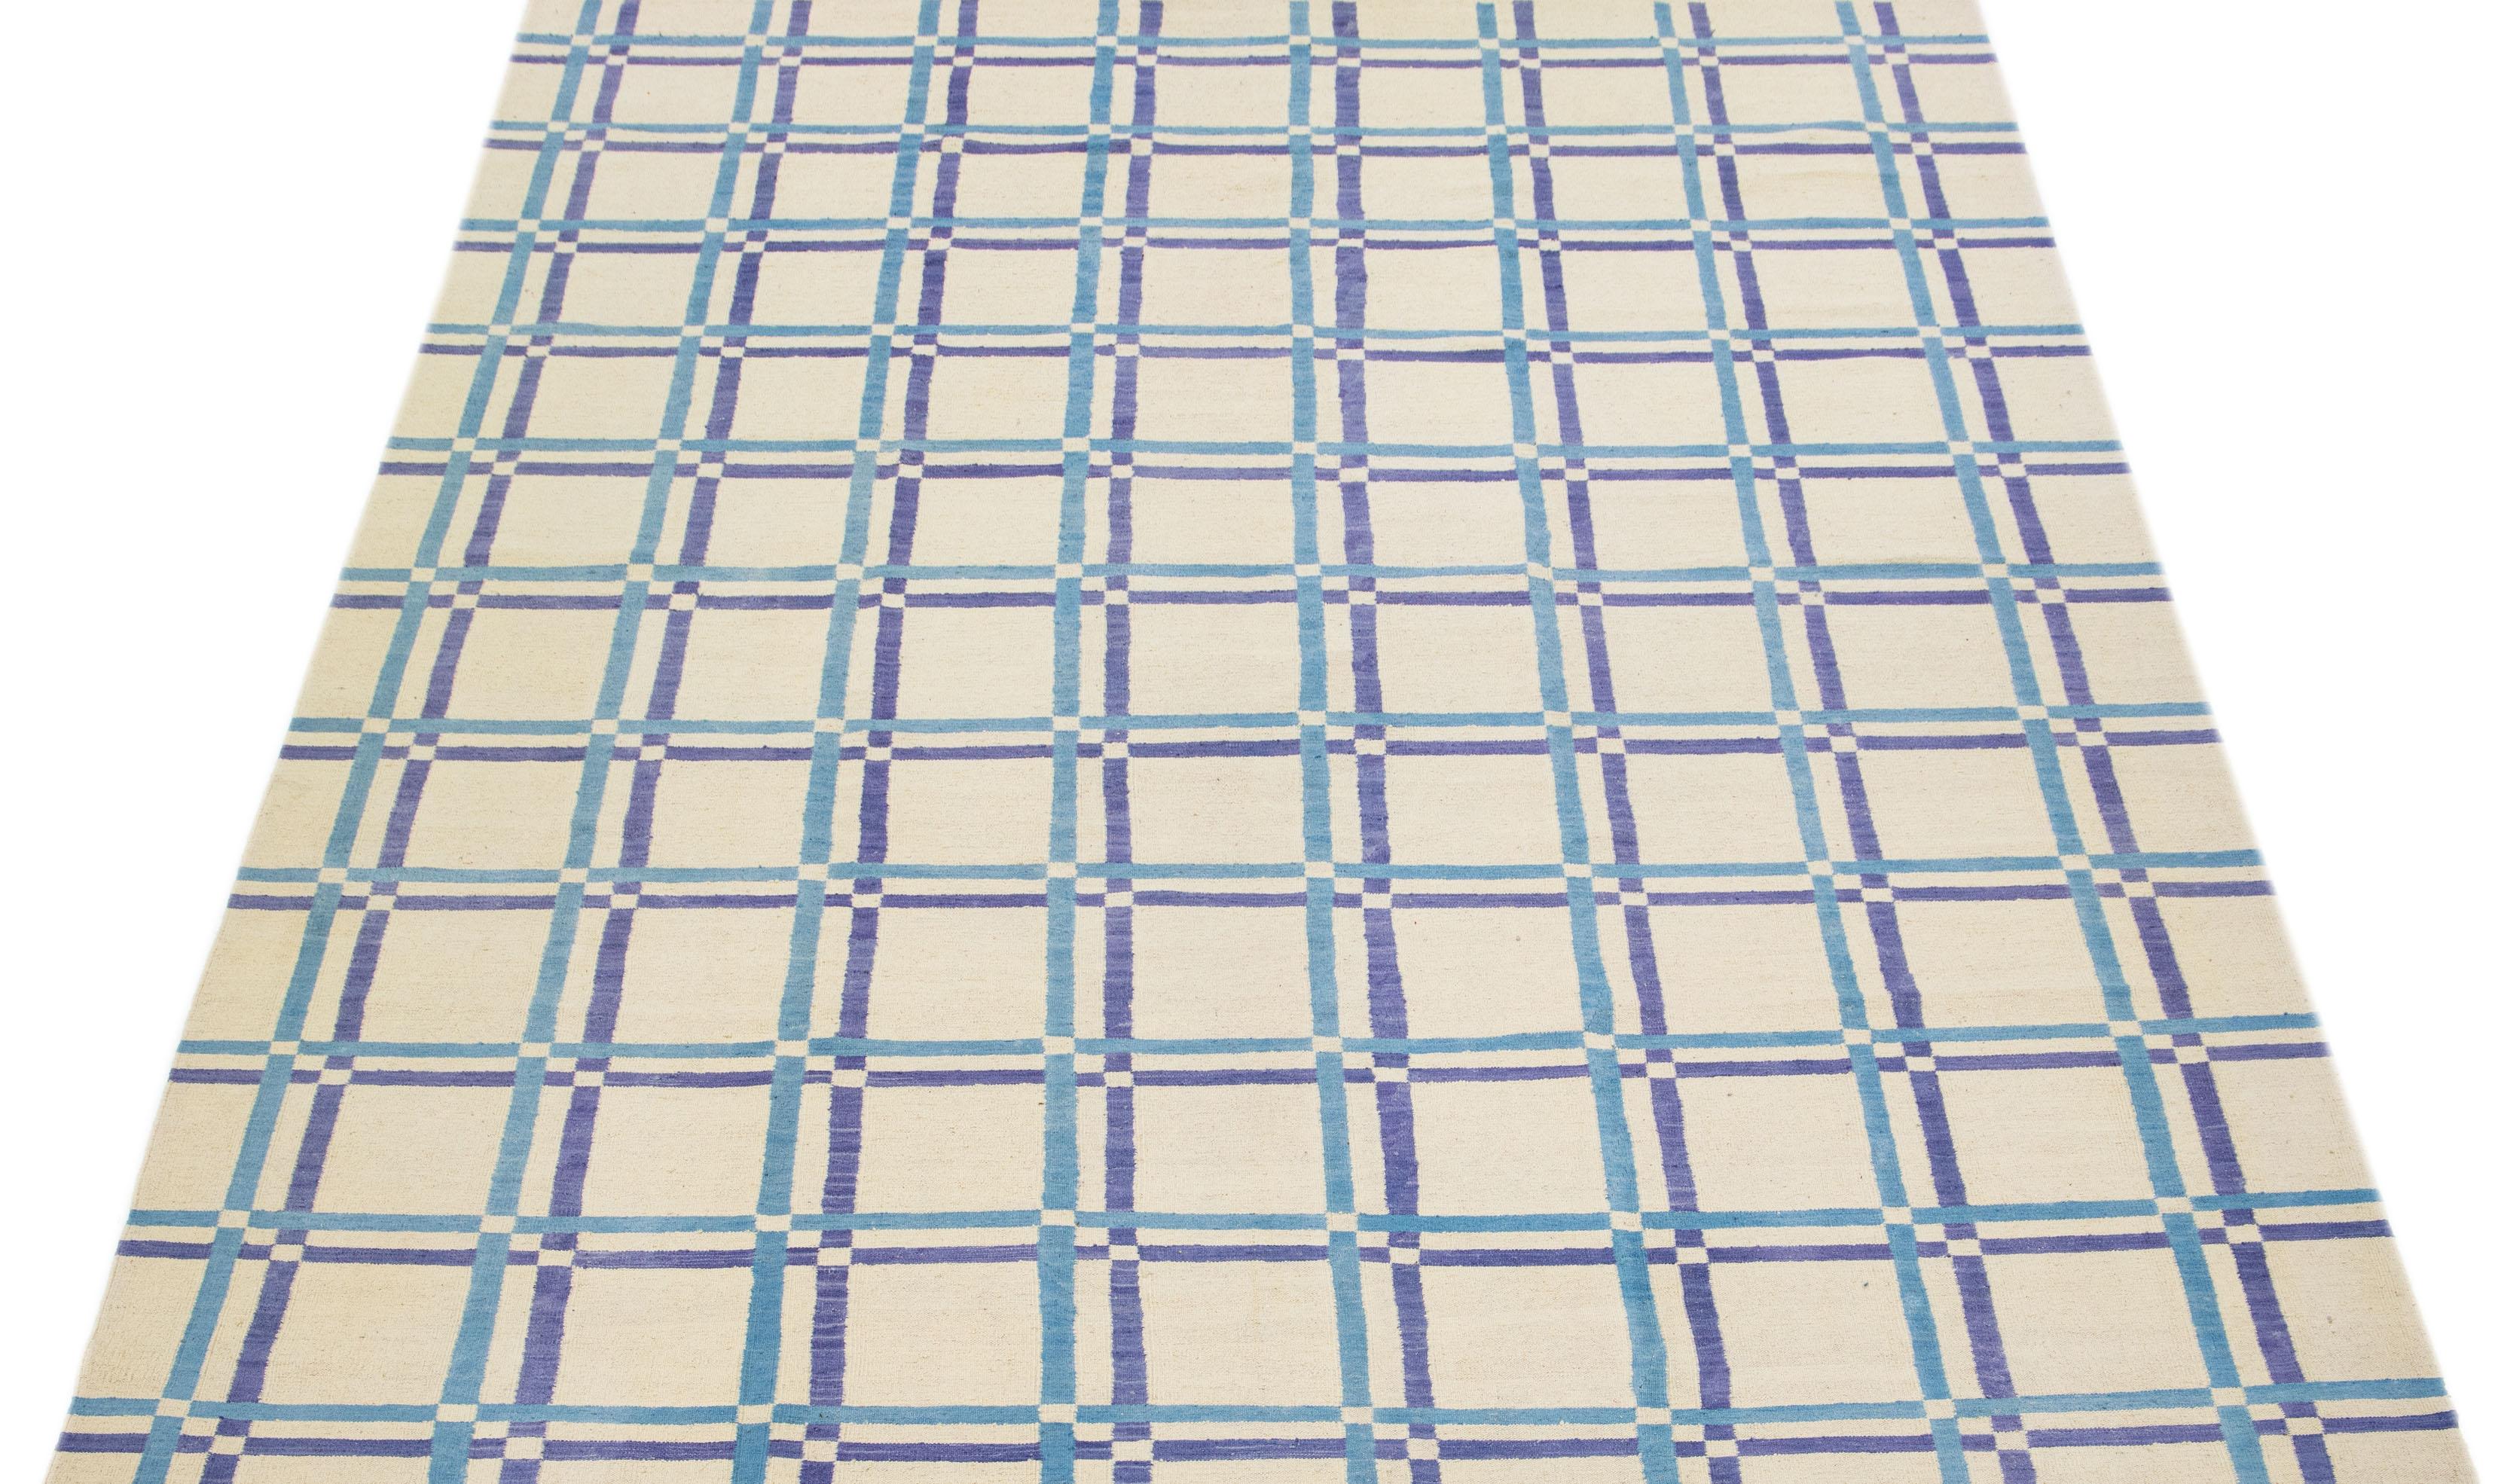 Ce tapis moderne Rug & Kilim respire l'élégance avec sa laine finement tissée à plat, présentée dans une captivante teinte ivoire complétée par un étonnant motif géométrique aux accents bleus.

Ce tapis mesure 9'2